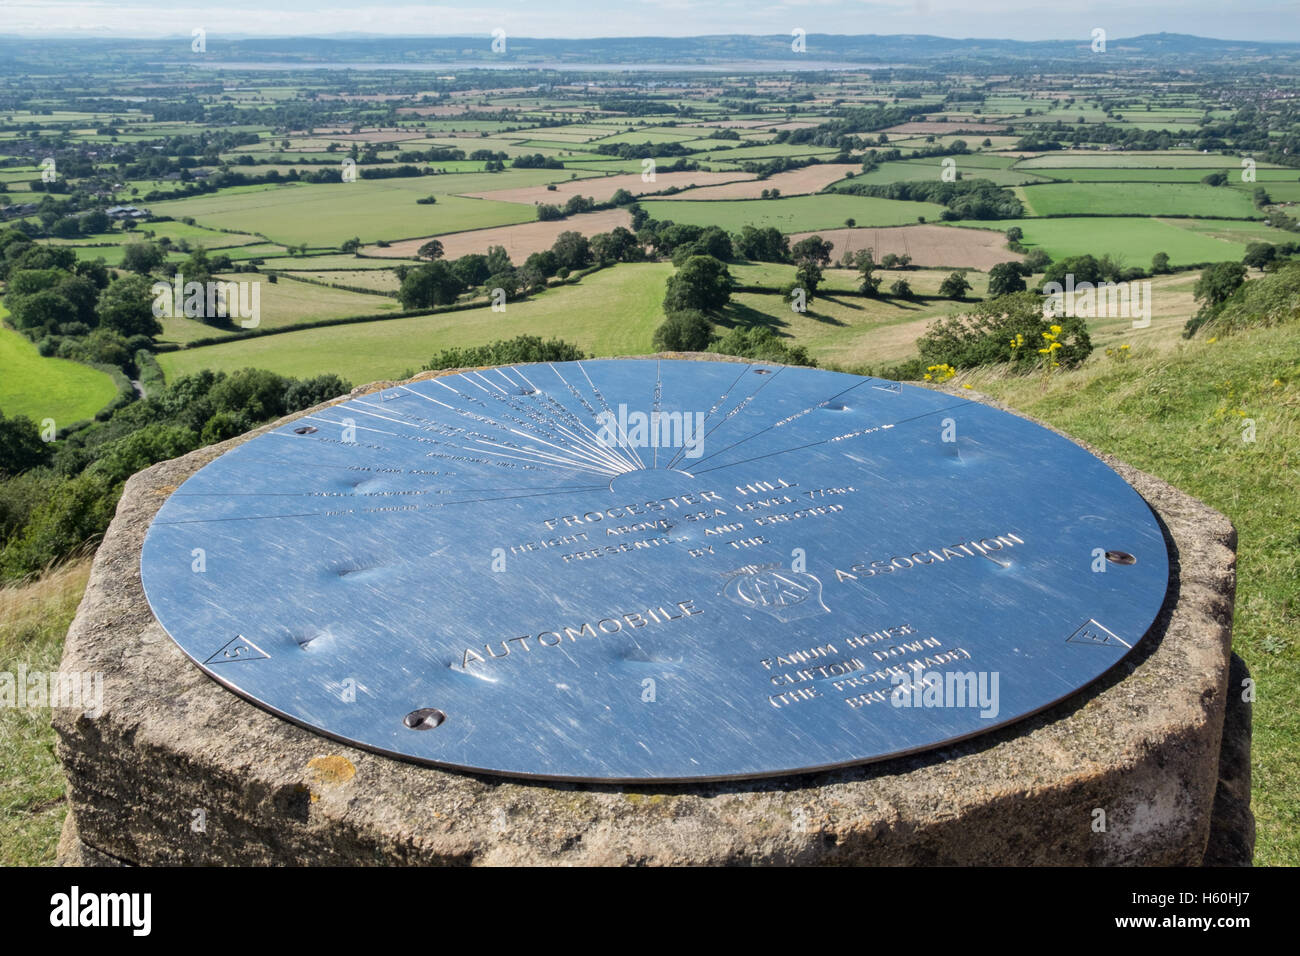 La topographie & view point à Coaley pic, c Stoud, Gloucestershire, Royaume-Uni. avec vue sur la Severn Vale vers le pays de Galles Banque D'Images